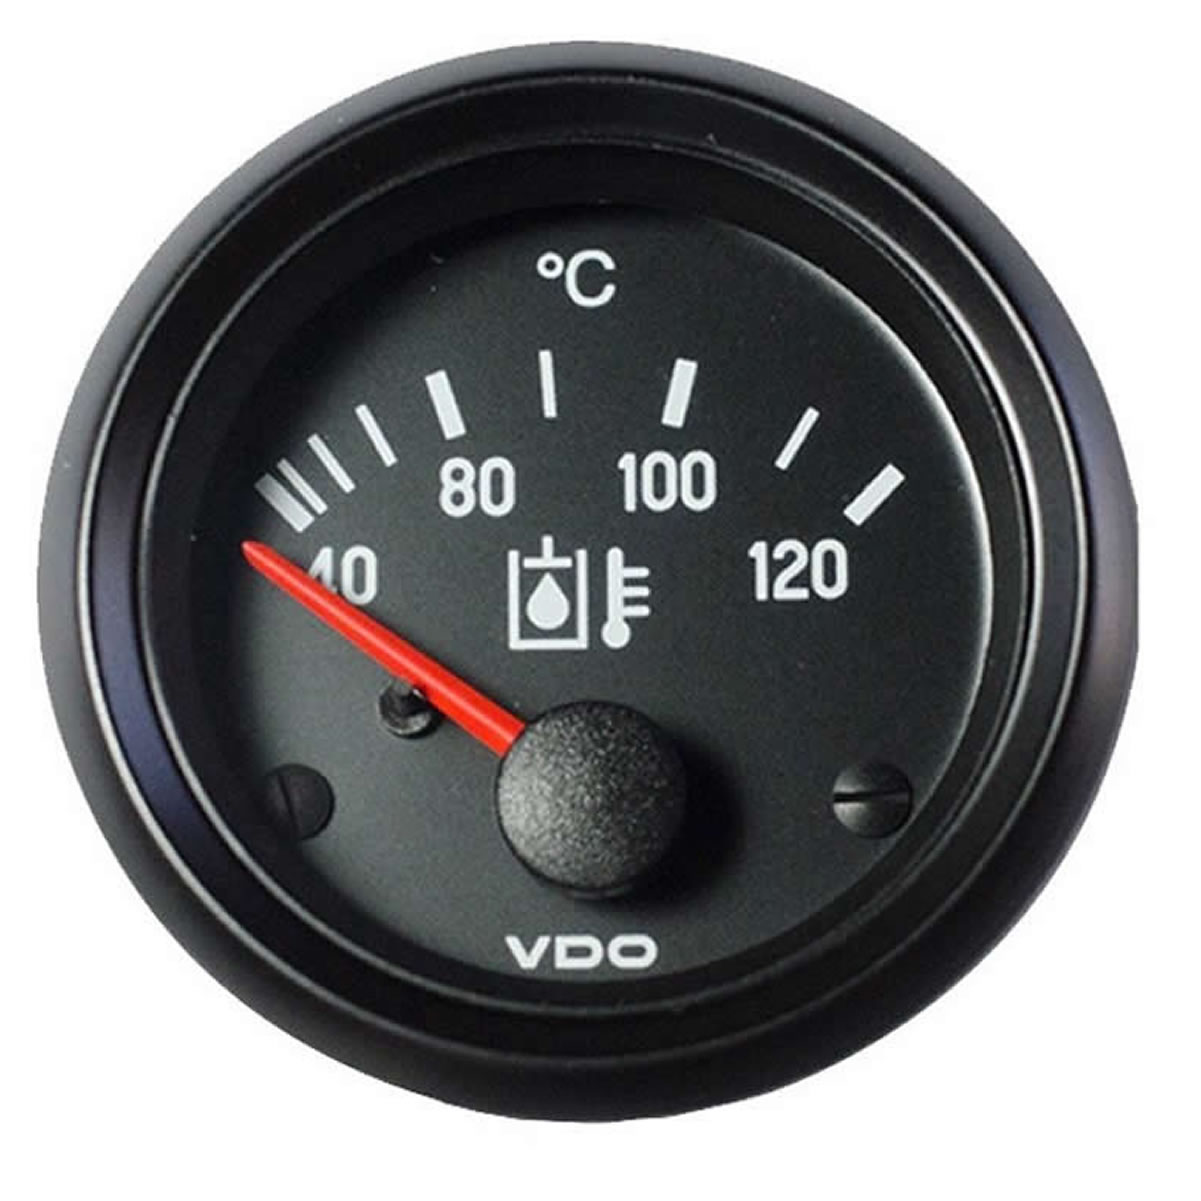 VDO Oil temperature 120C Gauge